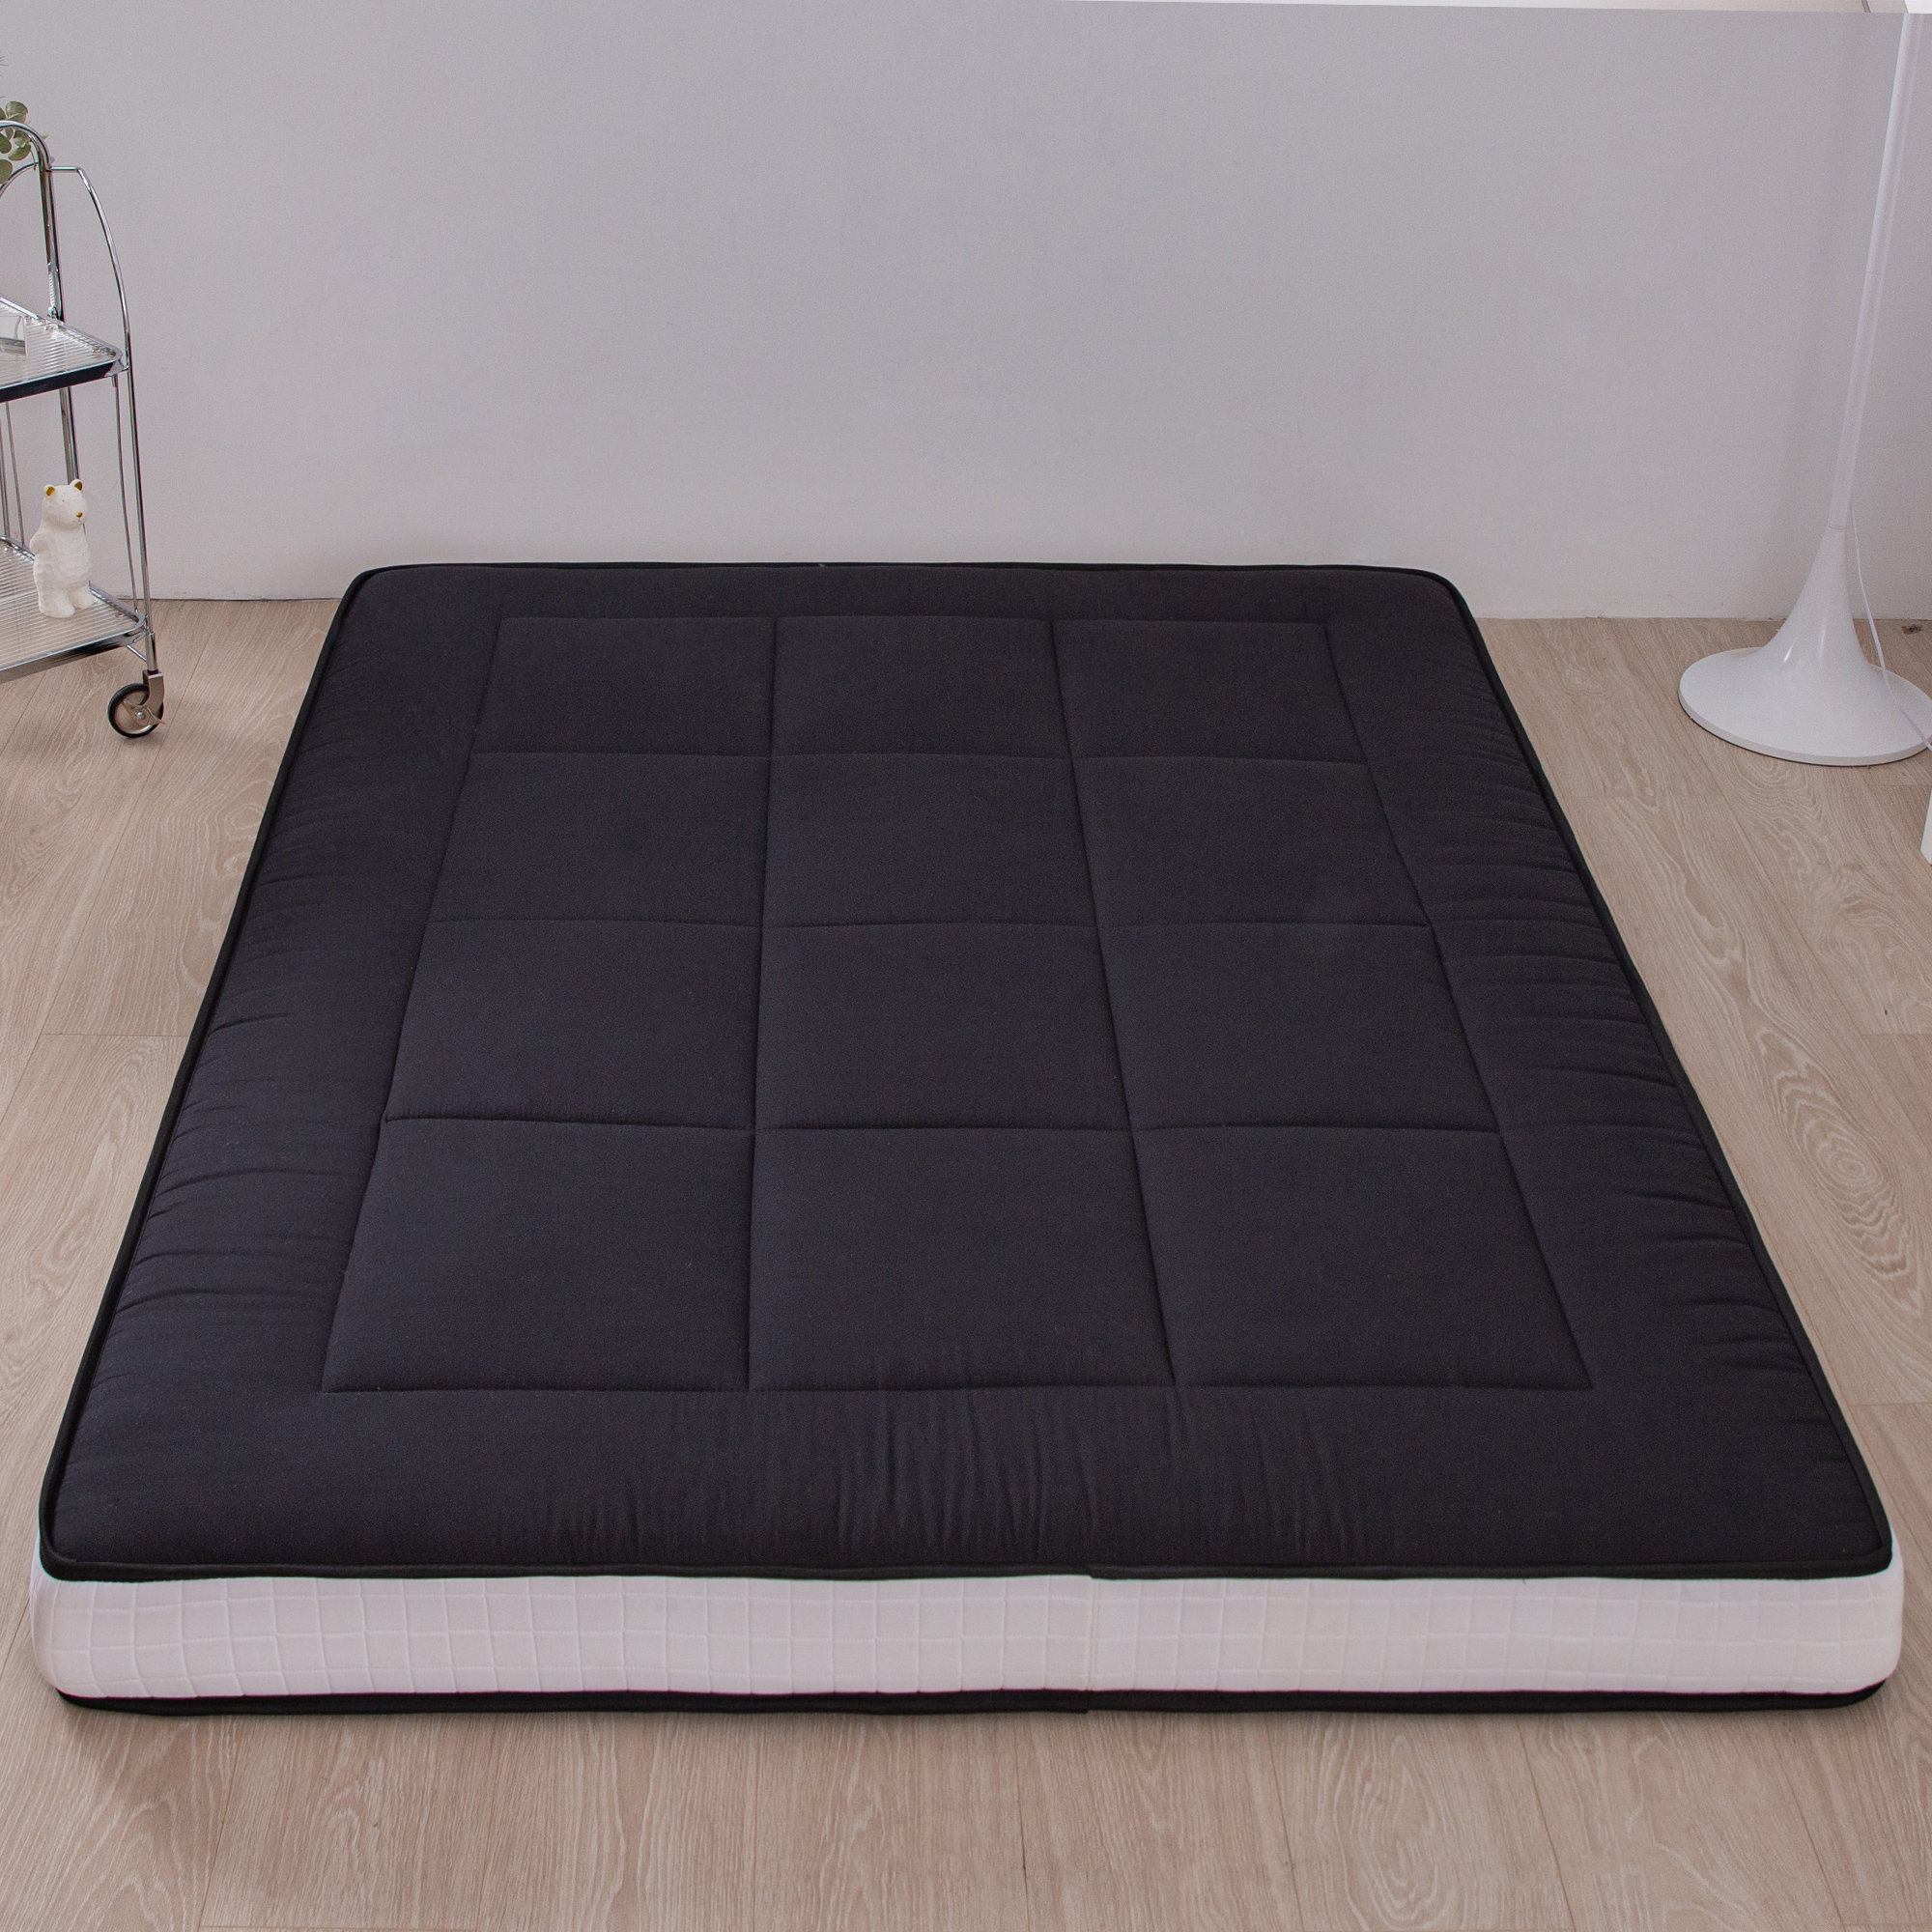 https://assets.wfcdn.com/im/48946285/compr-r85/2585/258514743/kumari-6-thick-floor-futon-mattress.jpg